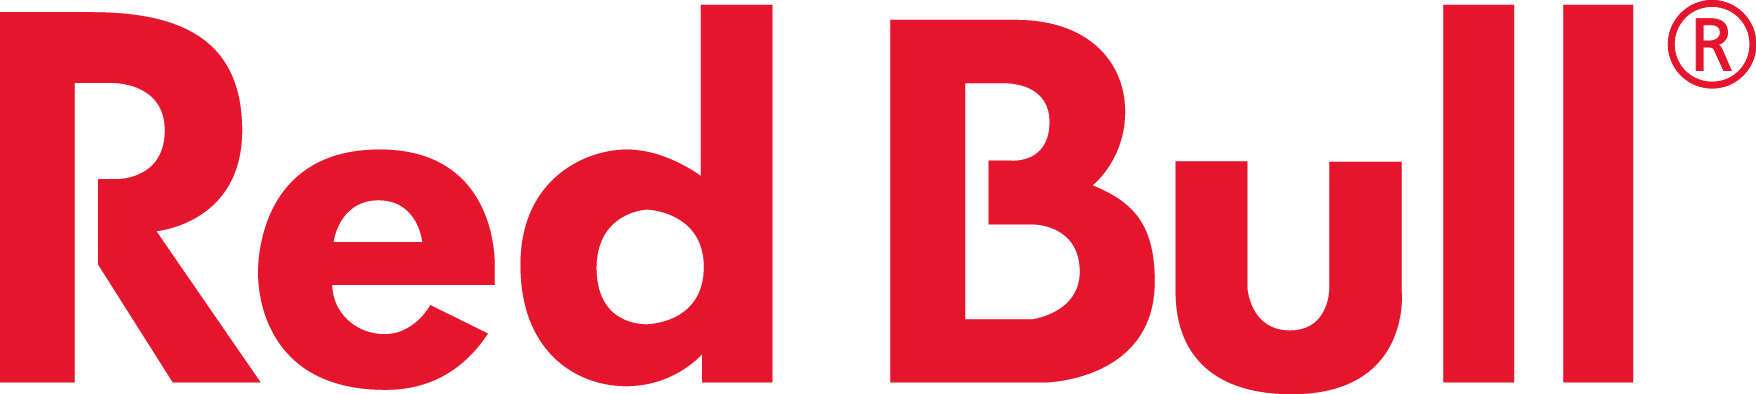 Red Bull Logo - Red Bull Energy Drink (1756x394)